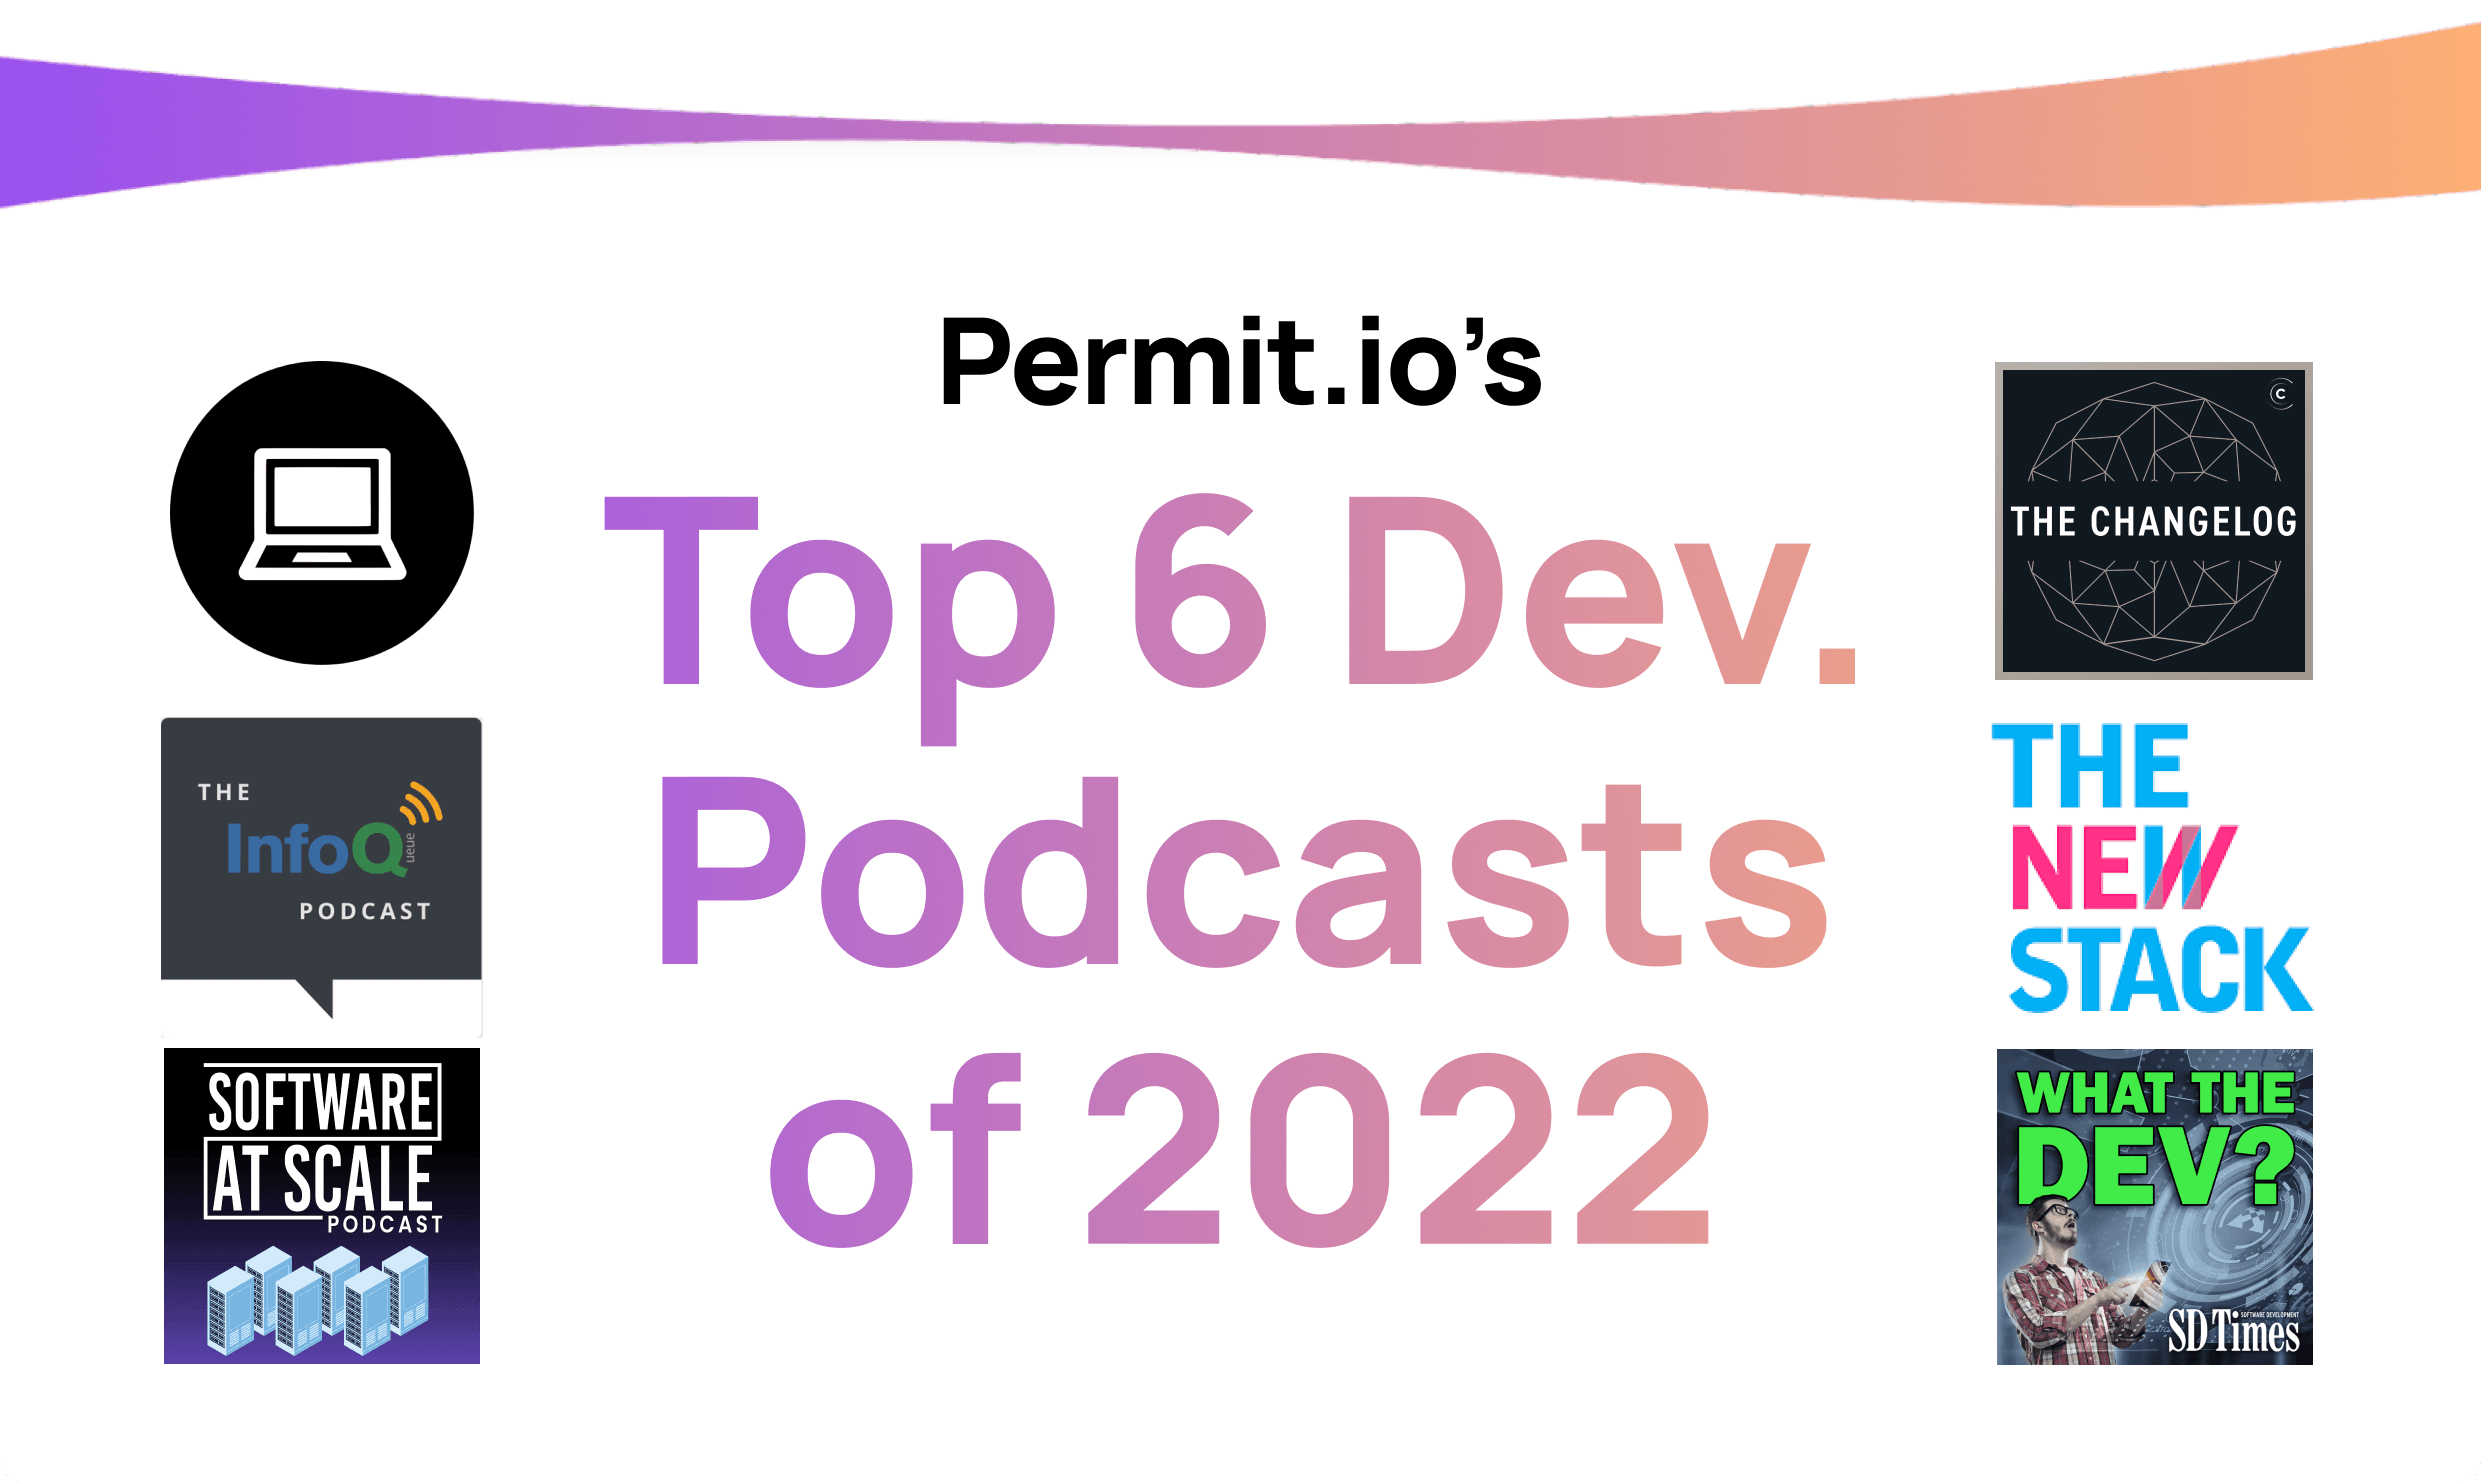 Permit.io's Top 6 Dev Podcasts of 2022